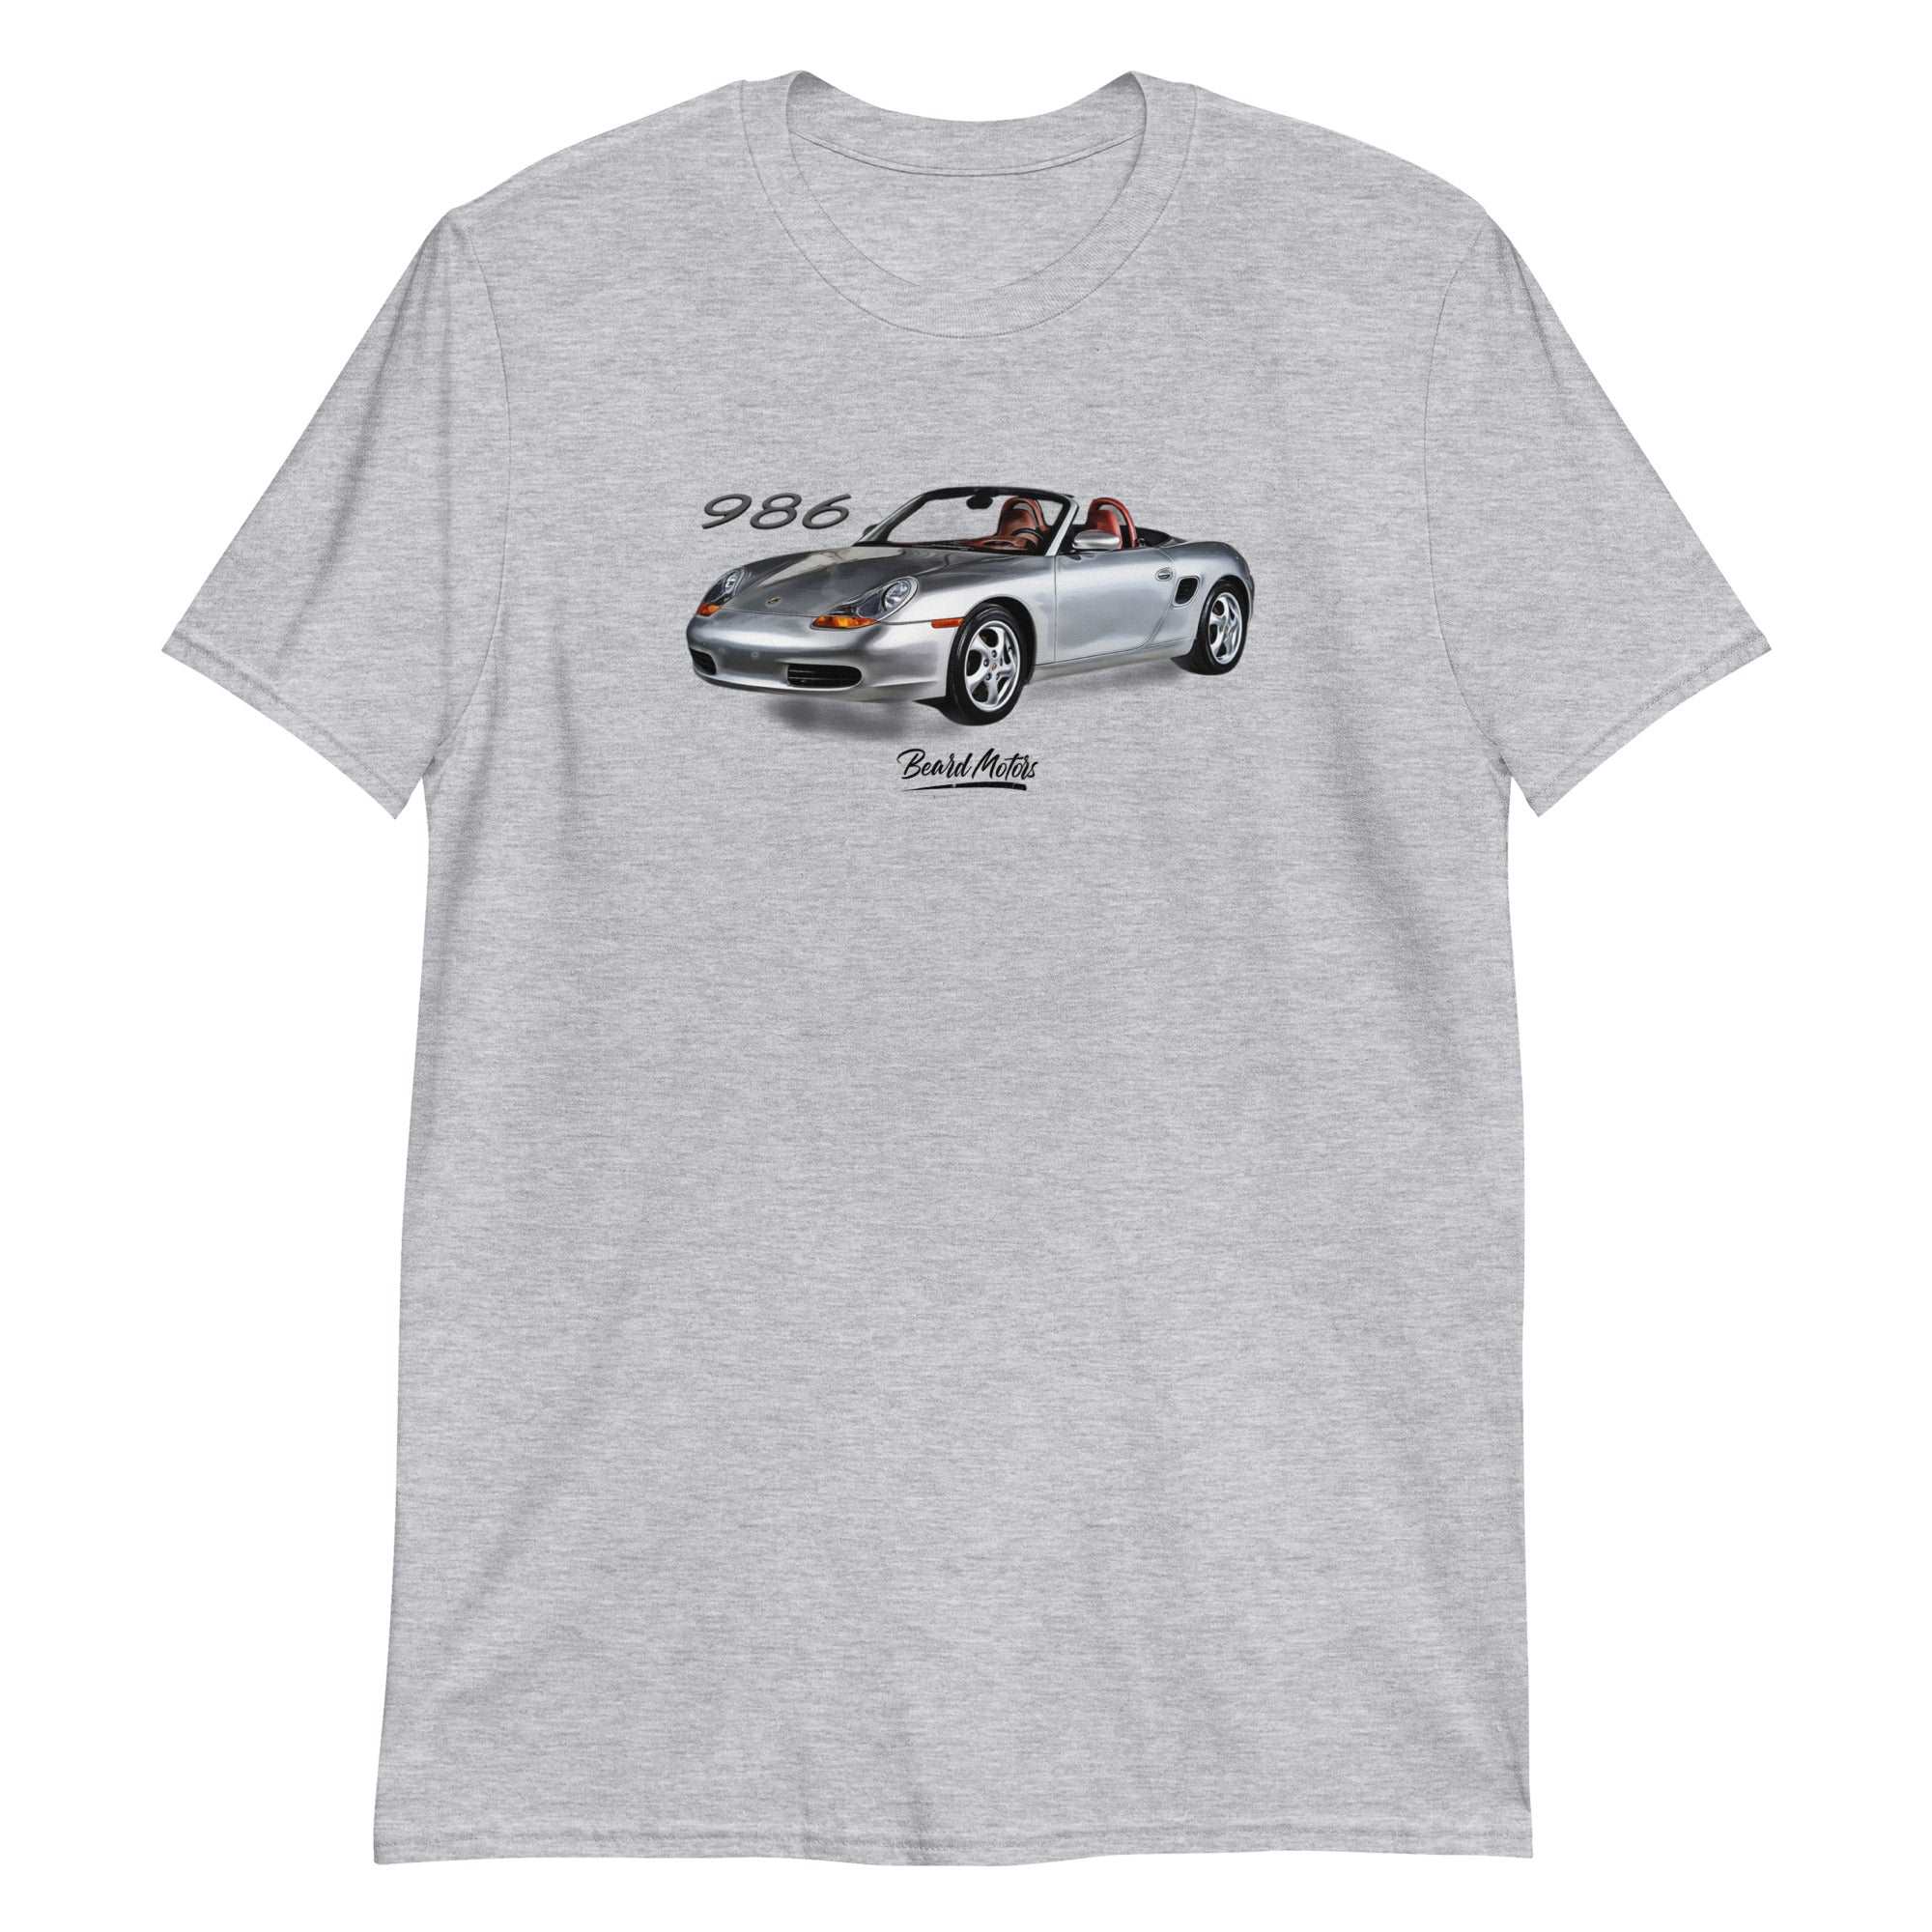 Beard Motors 986 Boxster Tribute T-Shirt Sport Grey